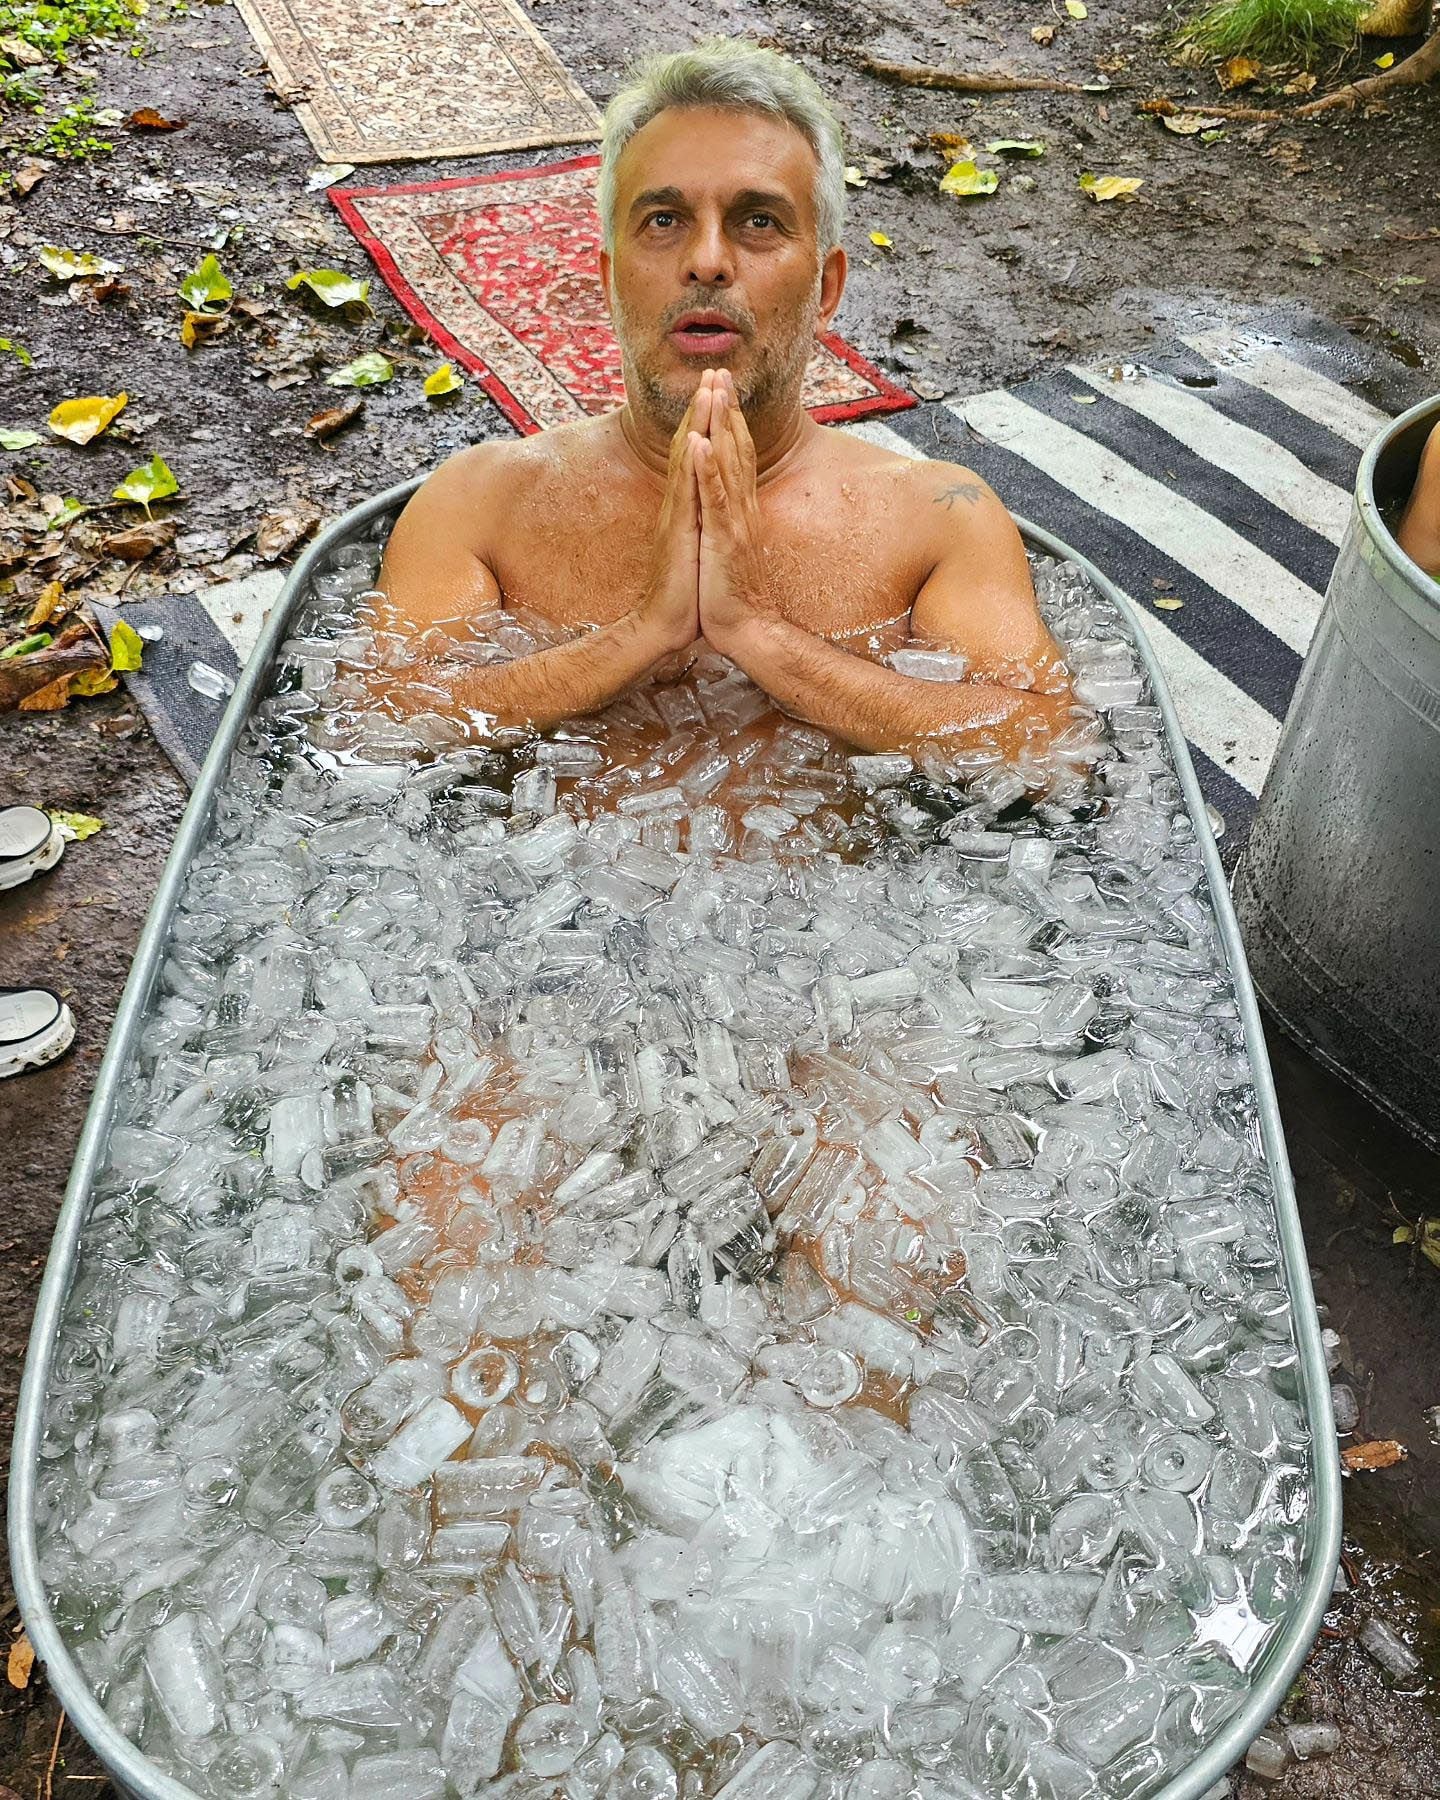 Mario Massacesi se animó a sumergirse en una bañera con hielo